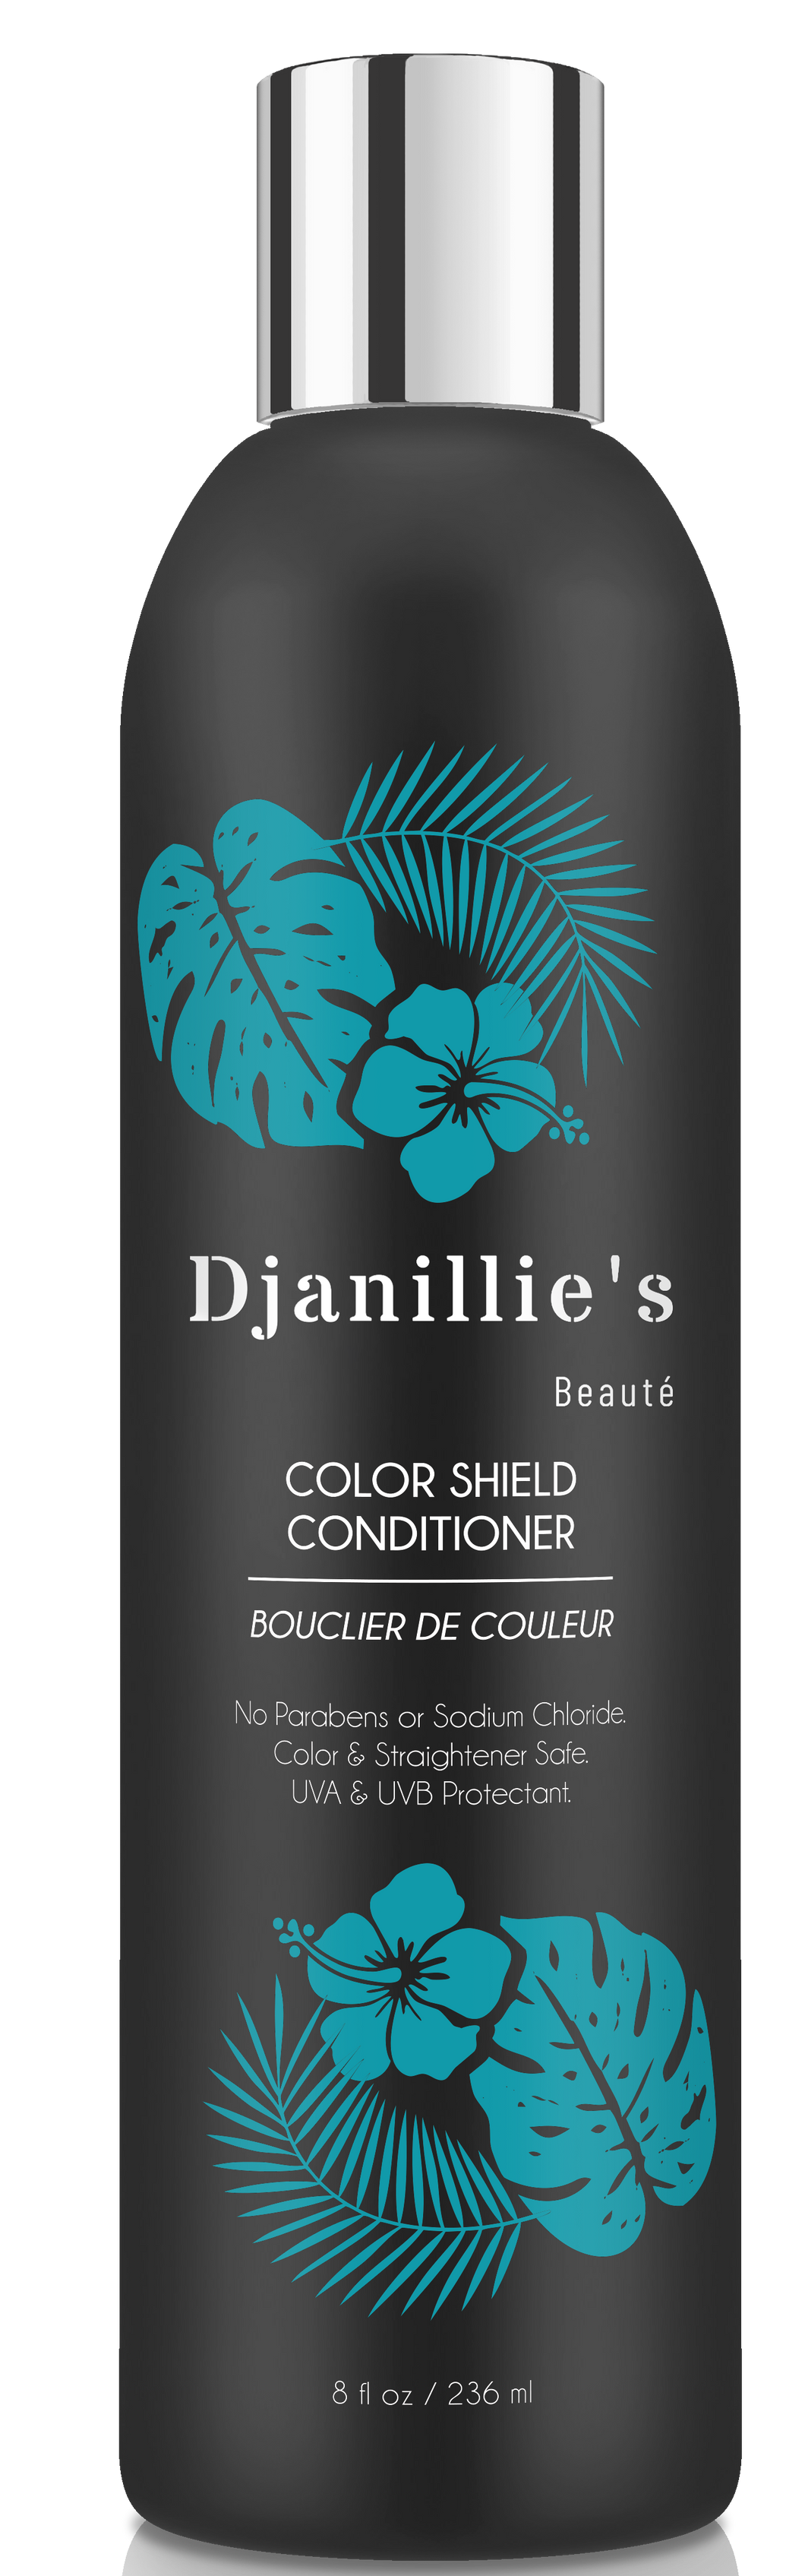 Color Shield Conditioner - Djanillie's Beauté